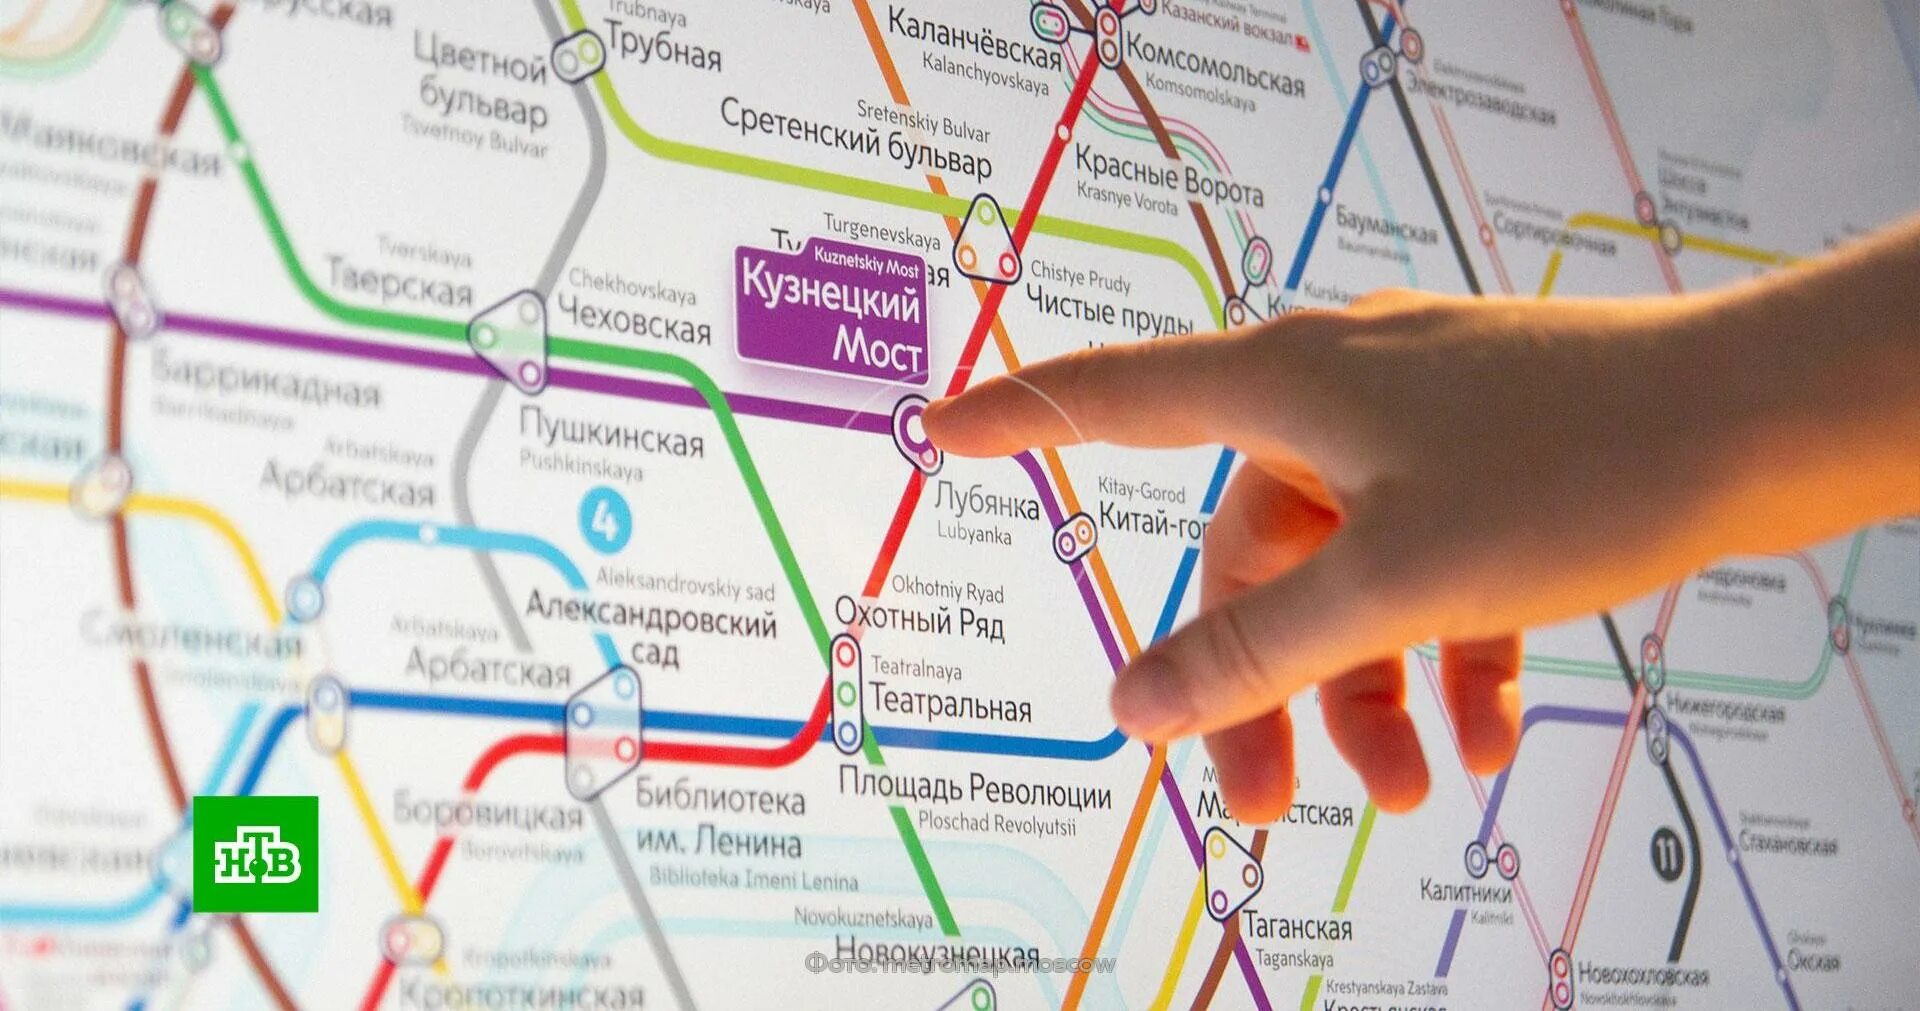 Карта Московского метрополитена 2030. Новая схема Московского метрополитена 2030. Московский метрополитен в 2030 году.